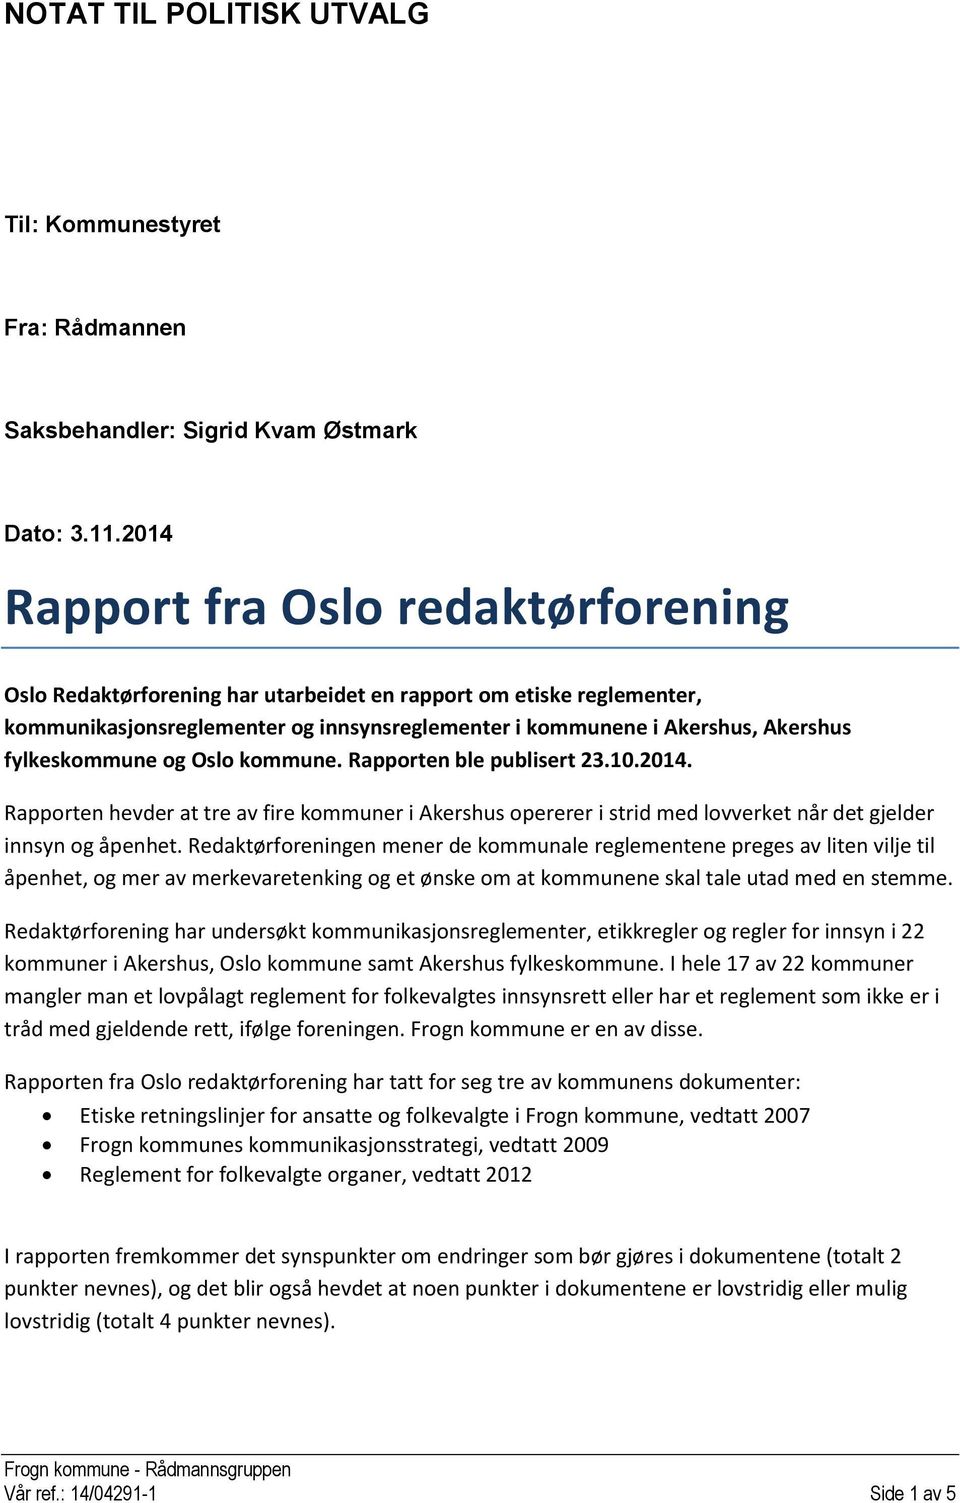 fylkeskommune og Oslo kommune. Rapporten ble publisert 23.10.2014. Rapporten hevder at tre av fire kommuner i Akershus opererer i strid med lovverket når det gjelder innsyn og åpenhet.